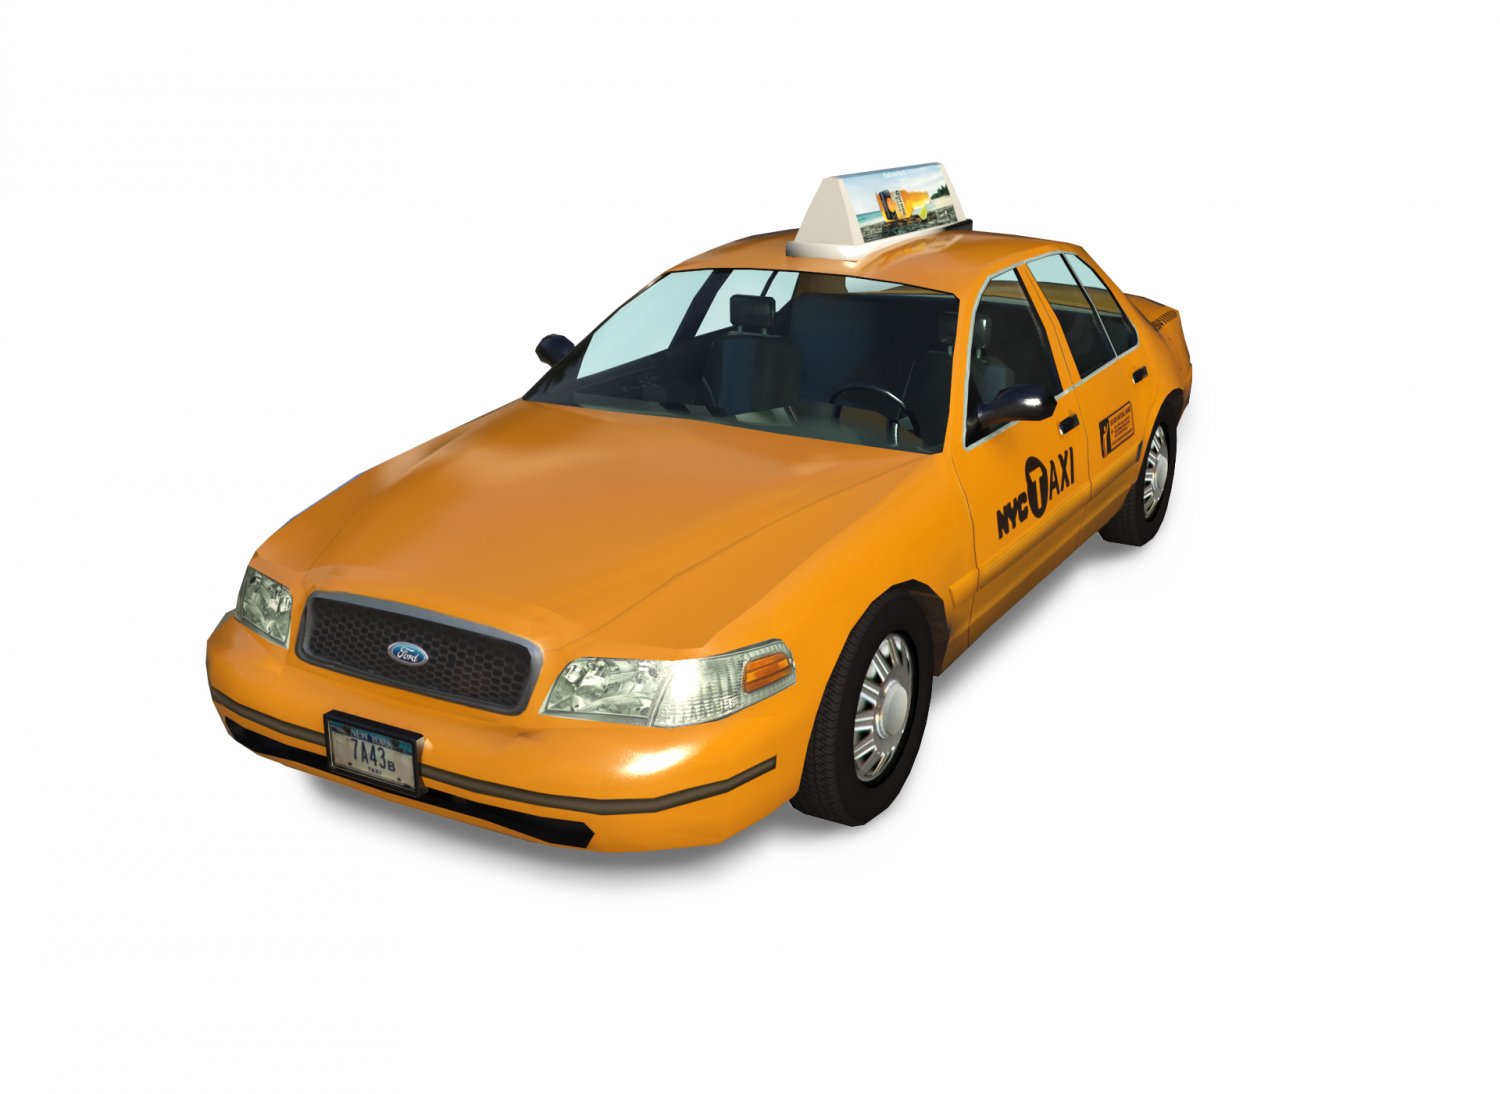 Jogo New York Taxi License 3D no Jogos 360